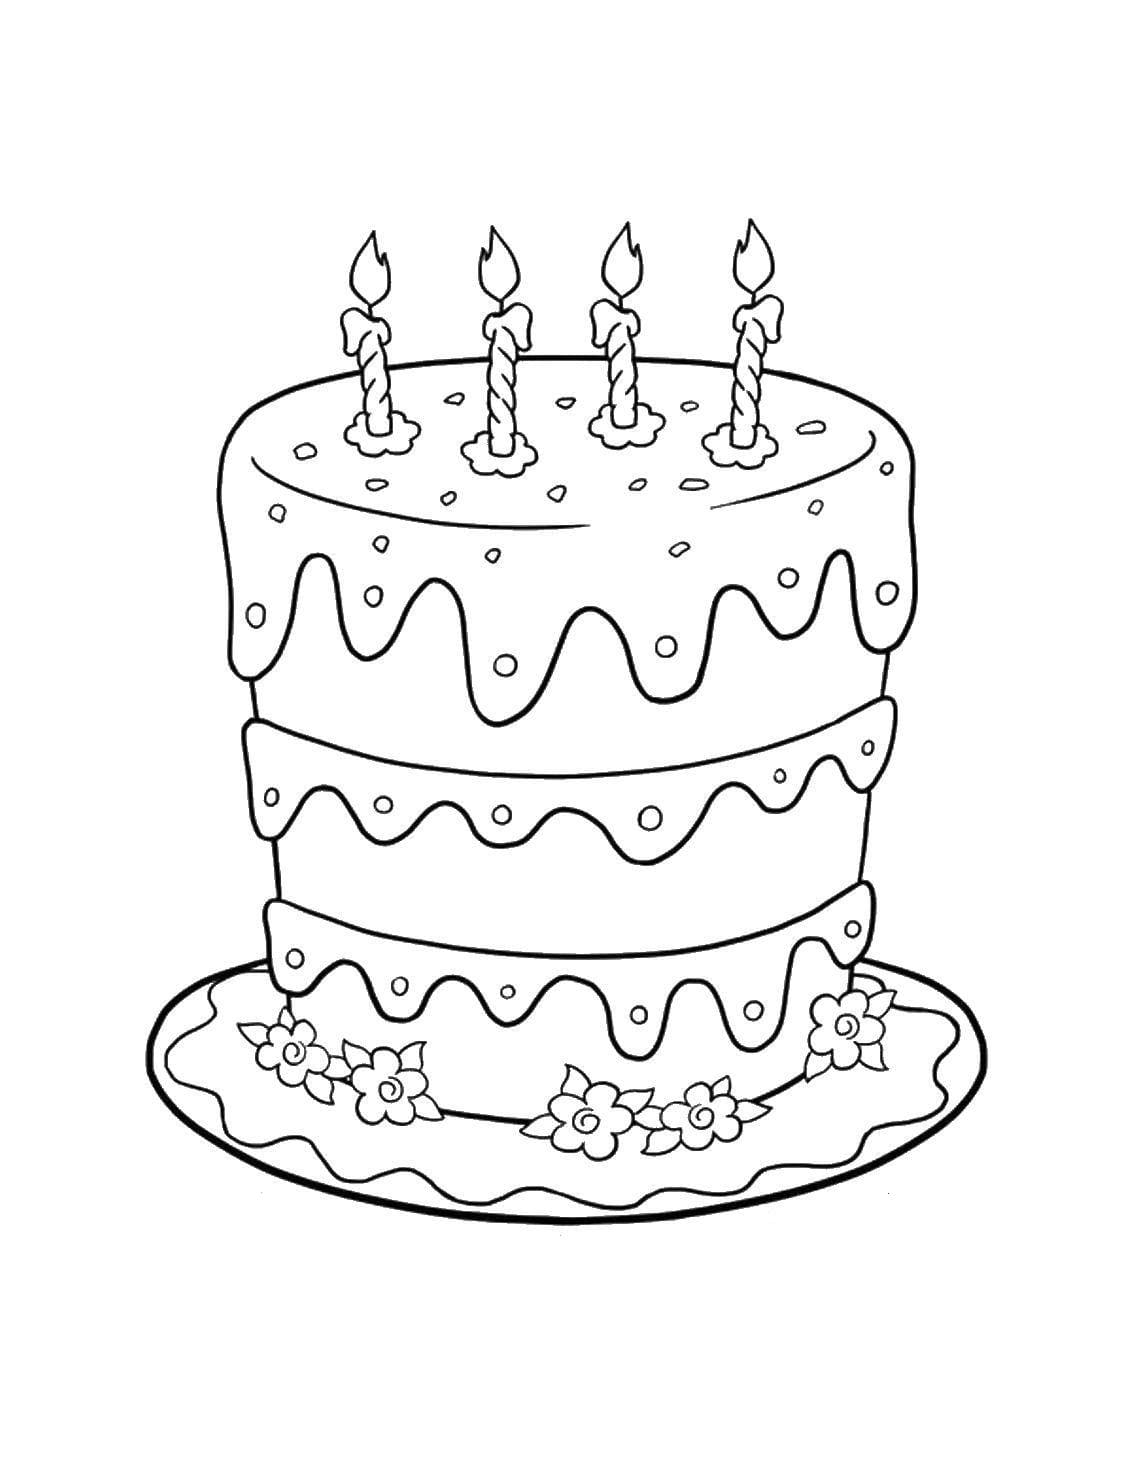 דף צביעה של עוגת יום הולדת מיוחדת עם ארבעה נרות